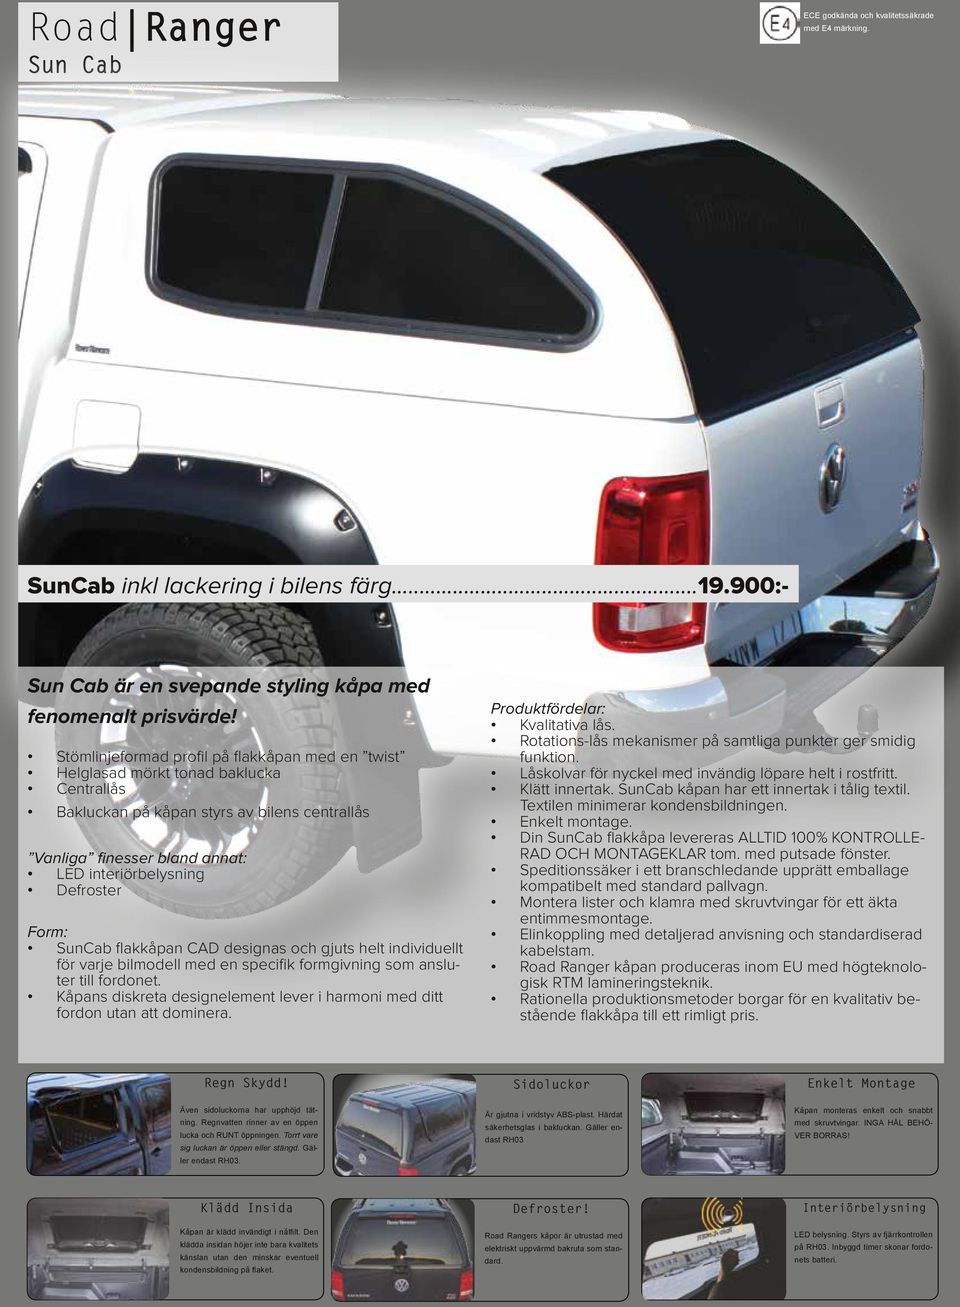 Form: SunCab flakkåpan CAD designas och gjuts helt individuellt för varje bilmodell med en specifik formgivning som ansluter till fordonet.